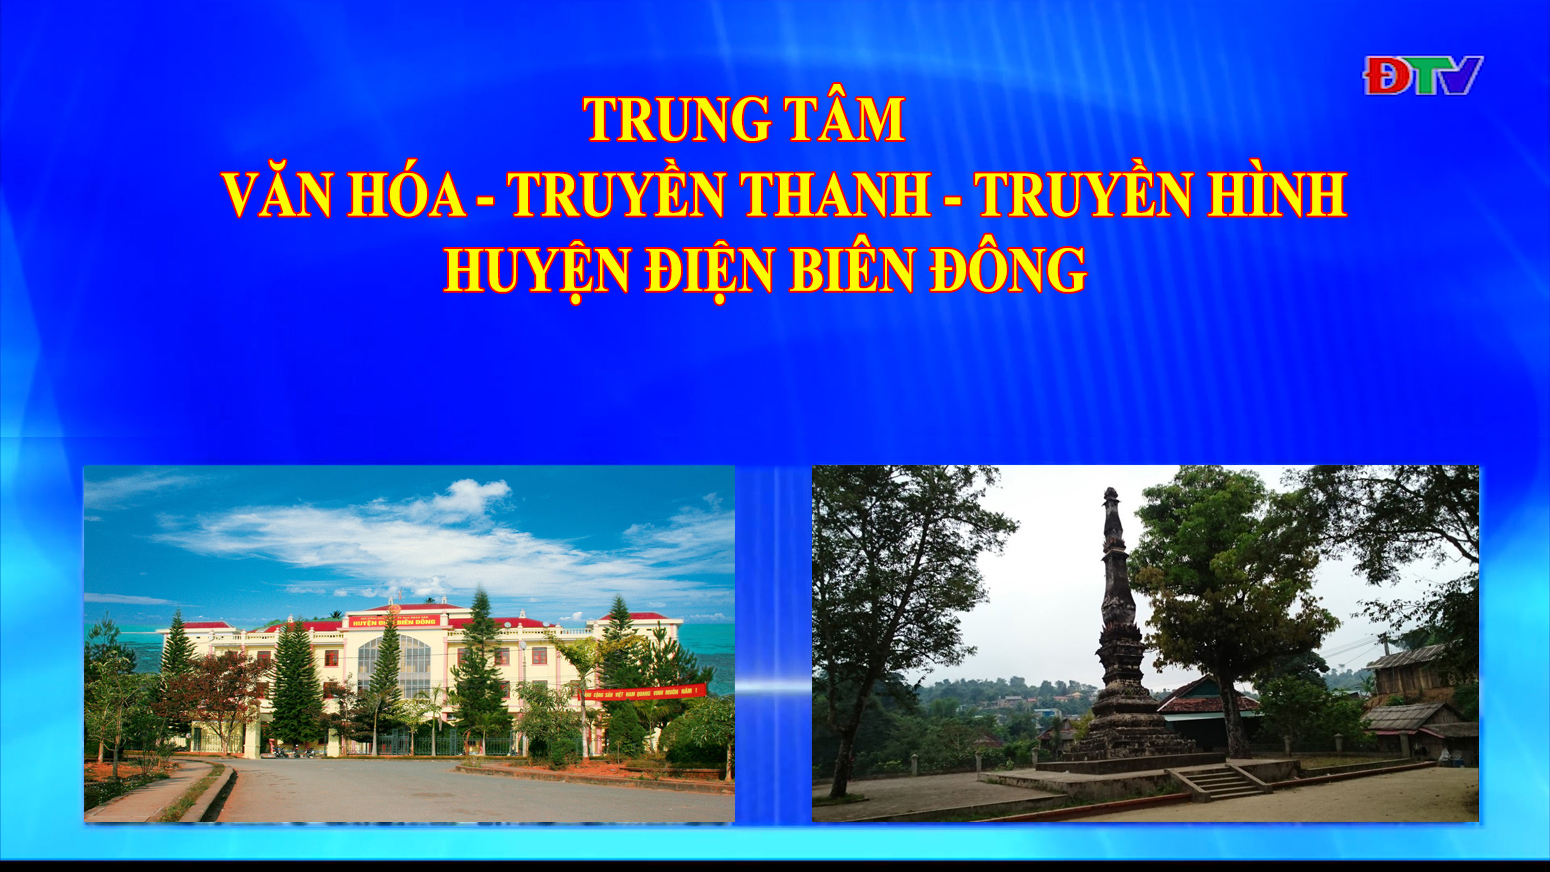 Trung tâm VH-TTTH huyện Điện Biên Đông (Ngày 10-7-2021)